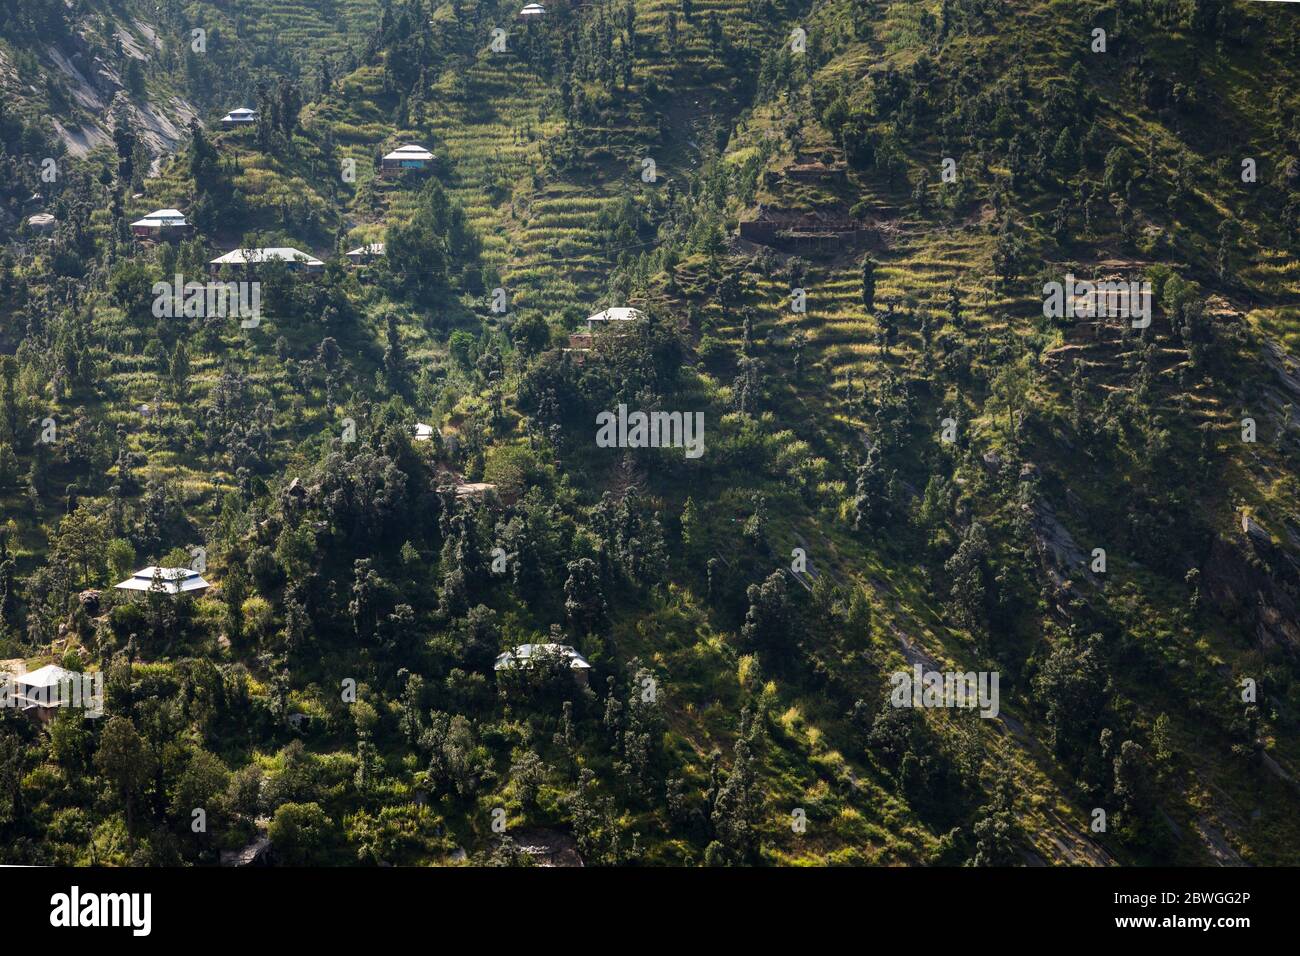 Impressionnant, maisons locales et terrain en terrasse escarpé à la falaise, Elum montagne trekking, Swat, province de Khyber Pakhtunkhwa, Pakistan, Asie du Sud, Asie Banque D'Images